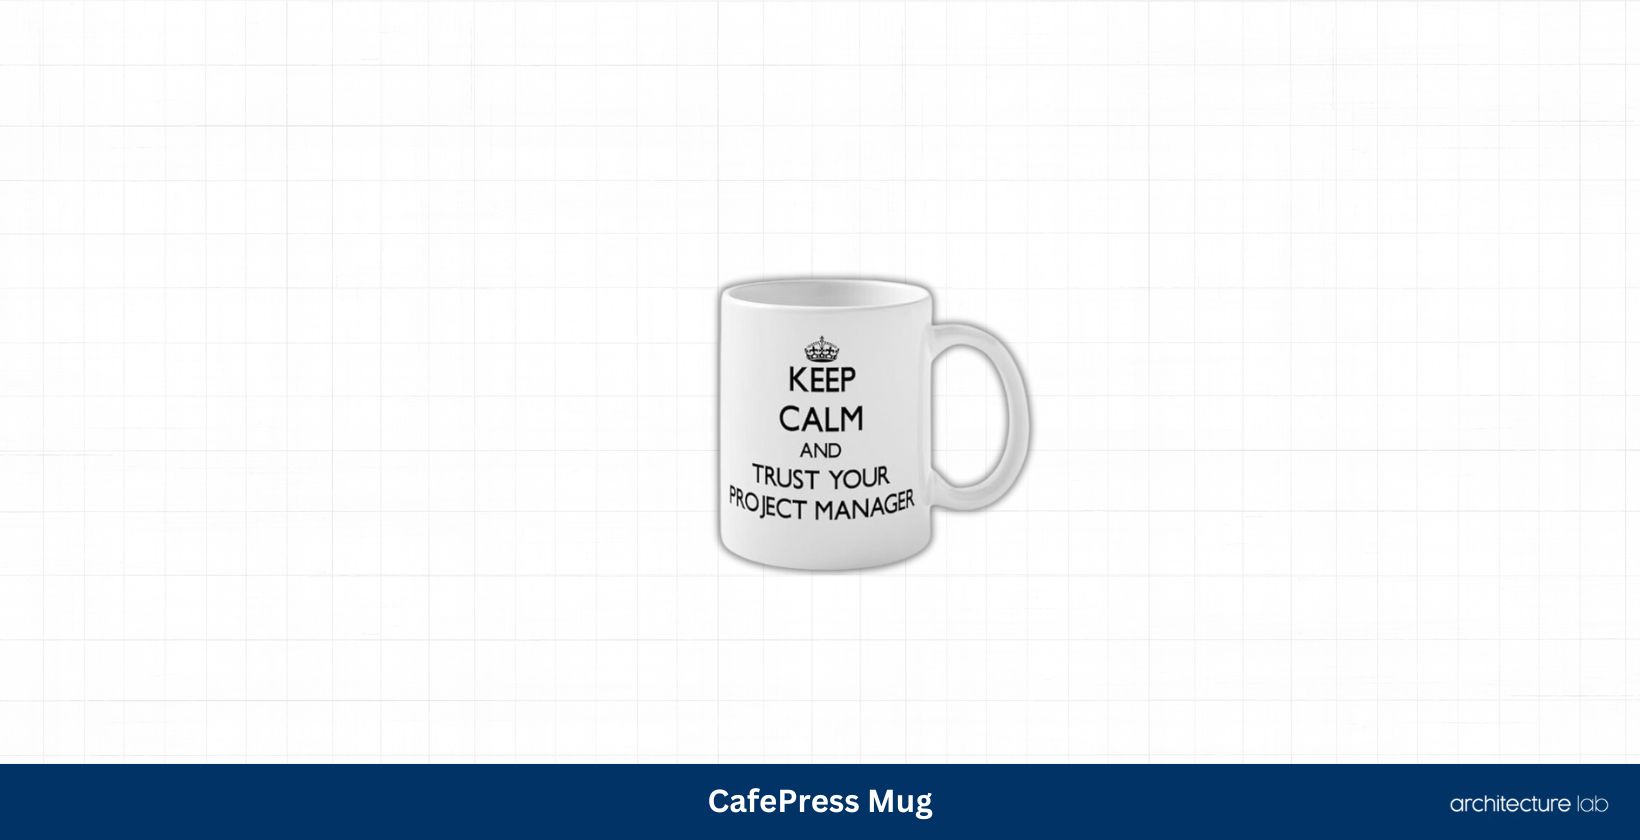 Cafepress mug